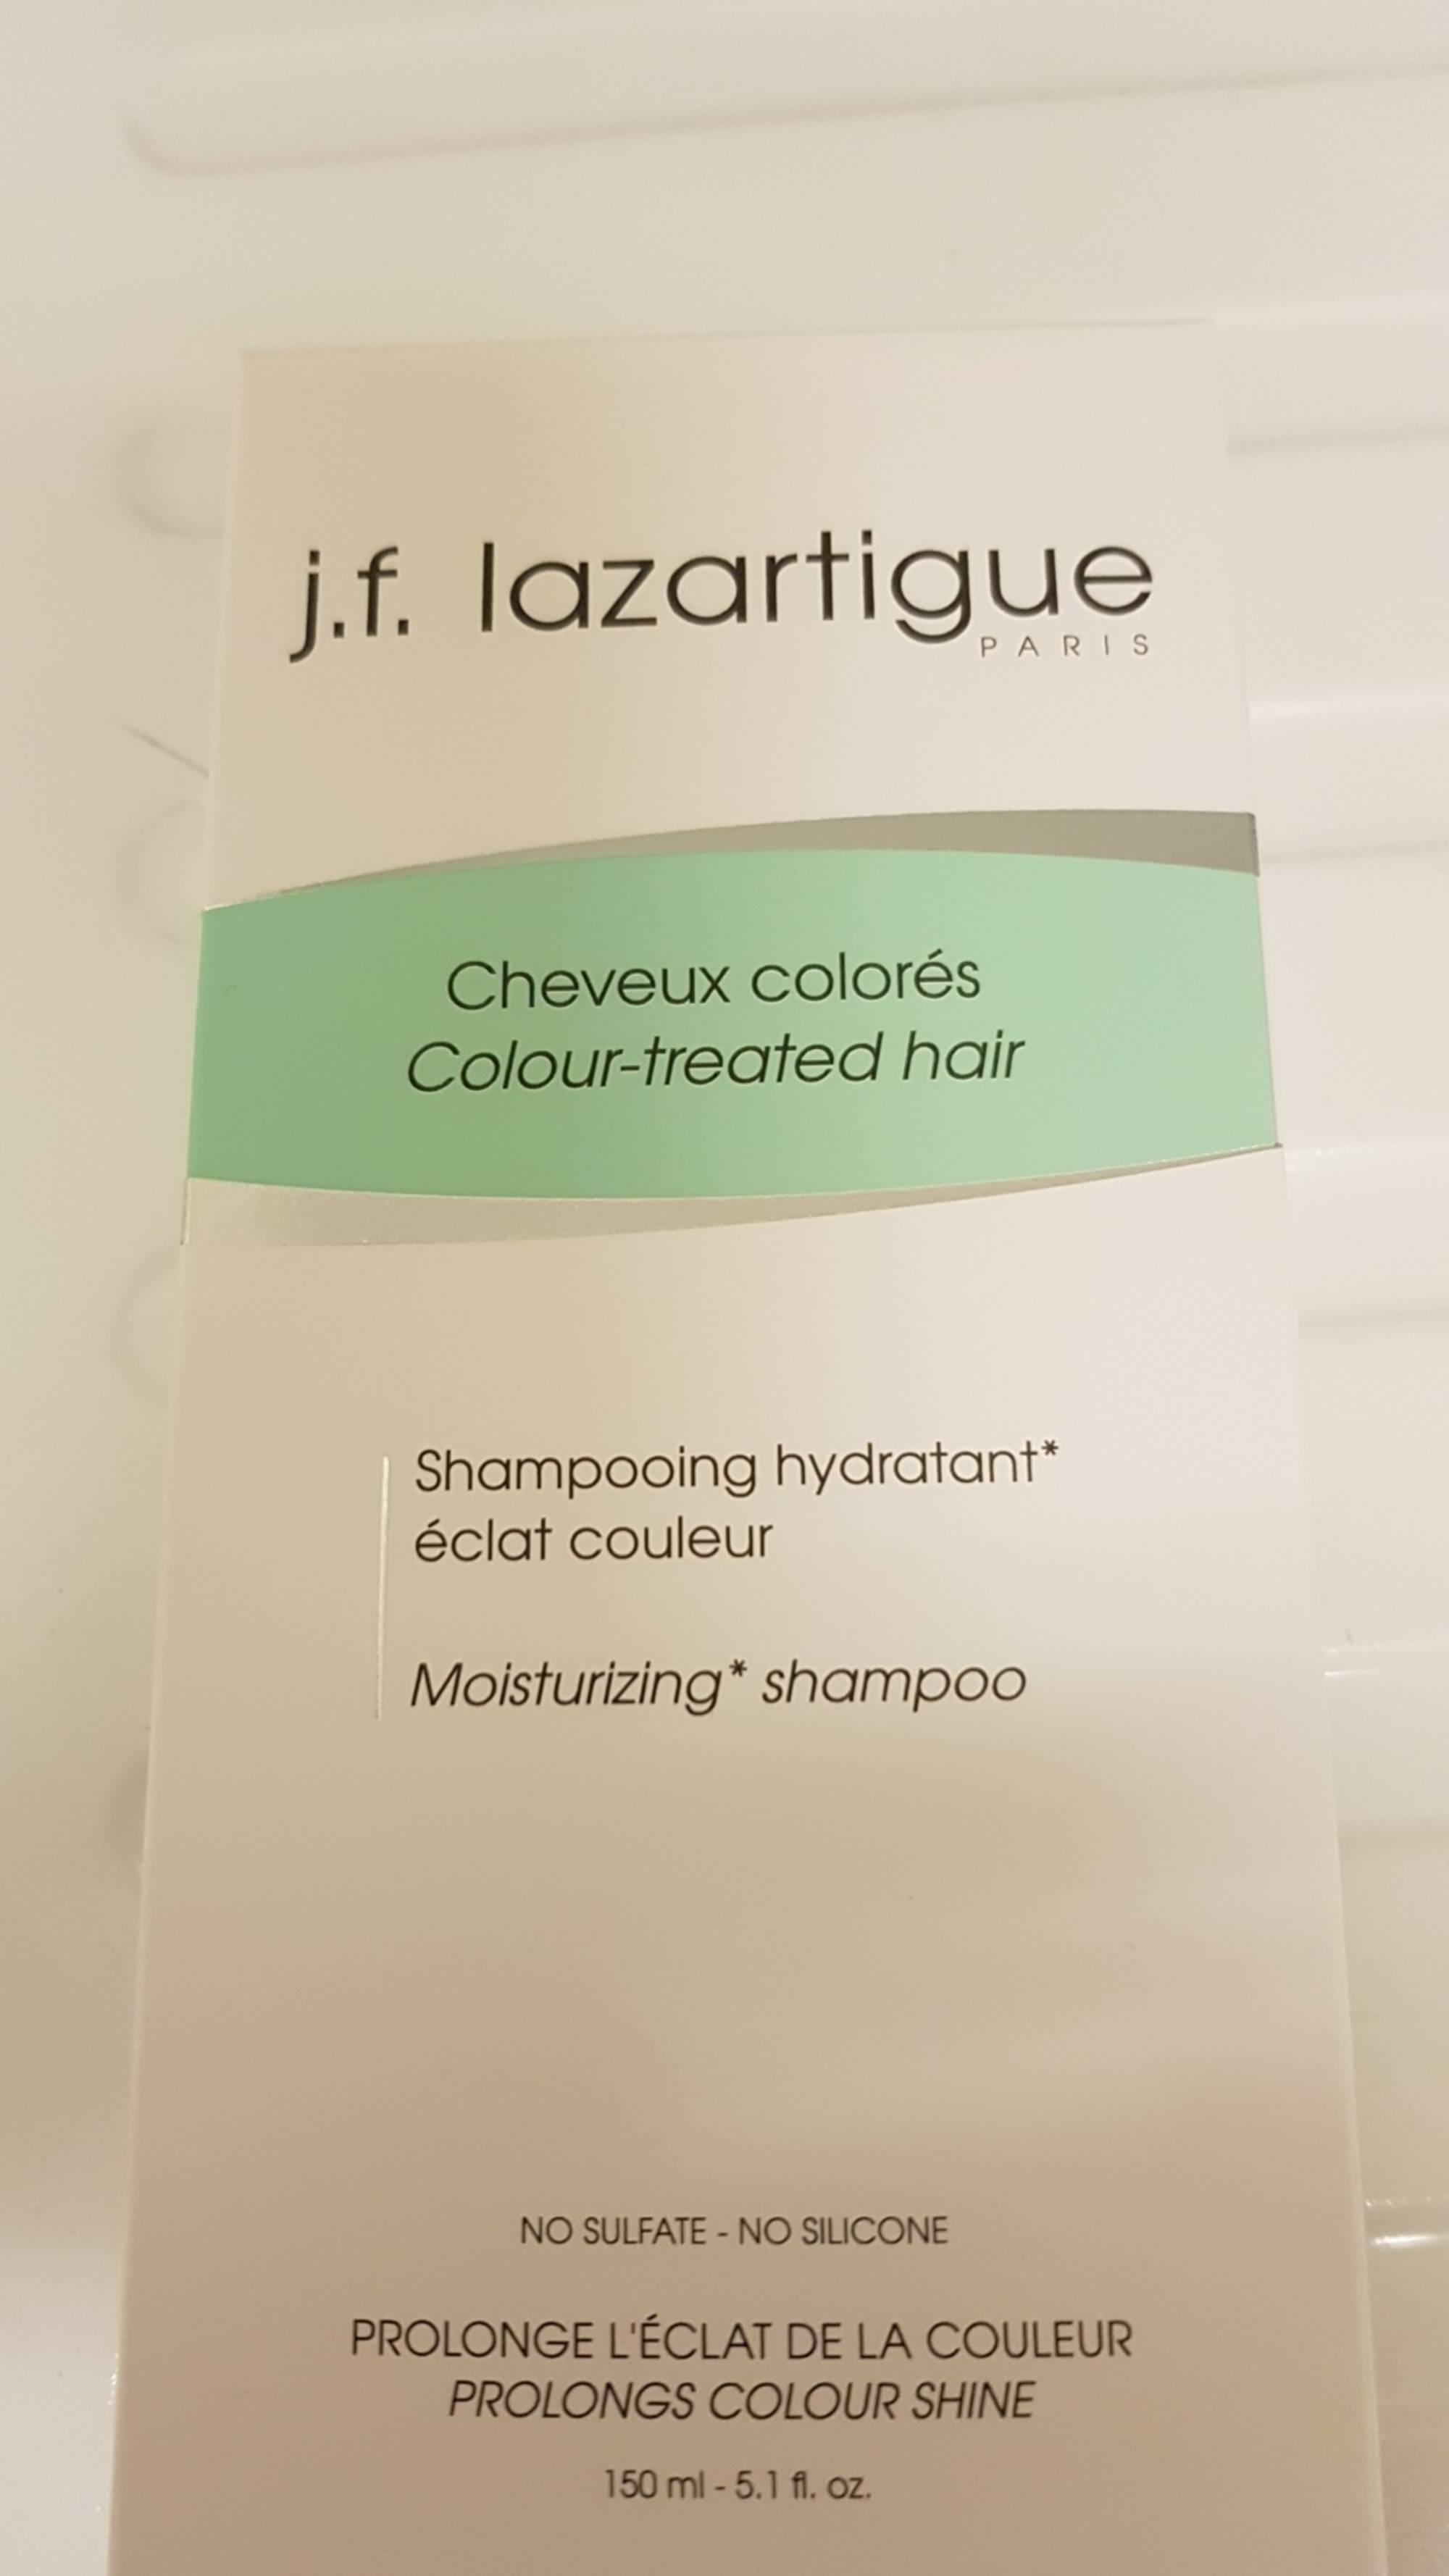 J.F. LAZARTIGUE - Cheveux colorés - Shampooing hydratant